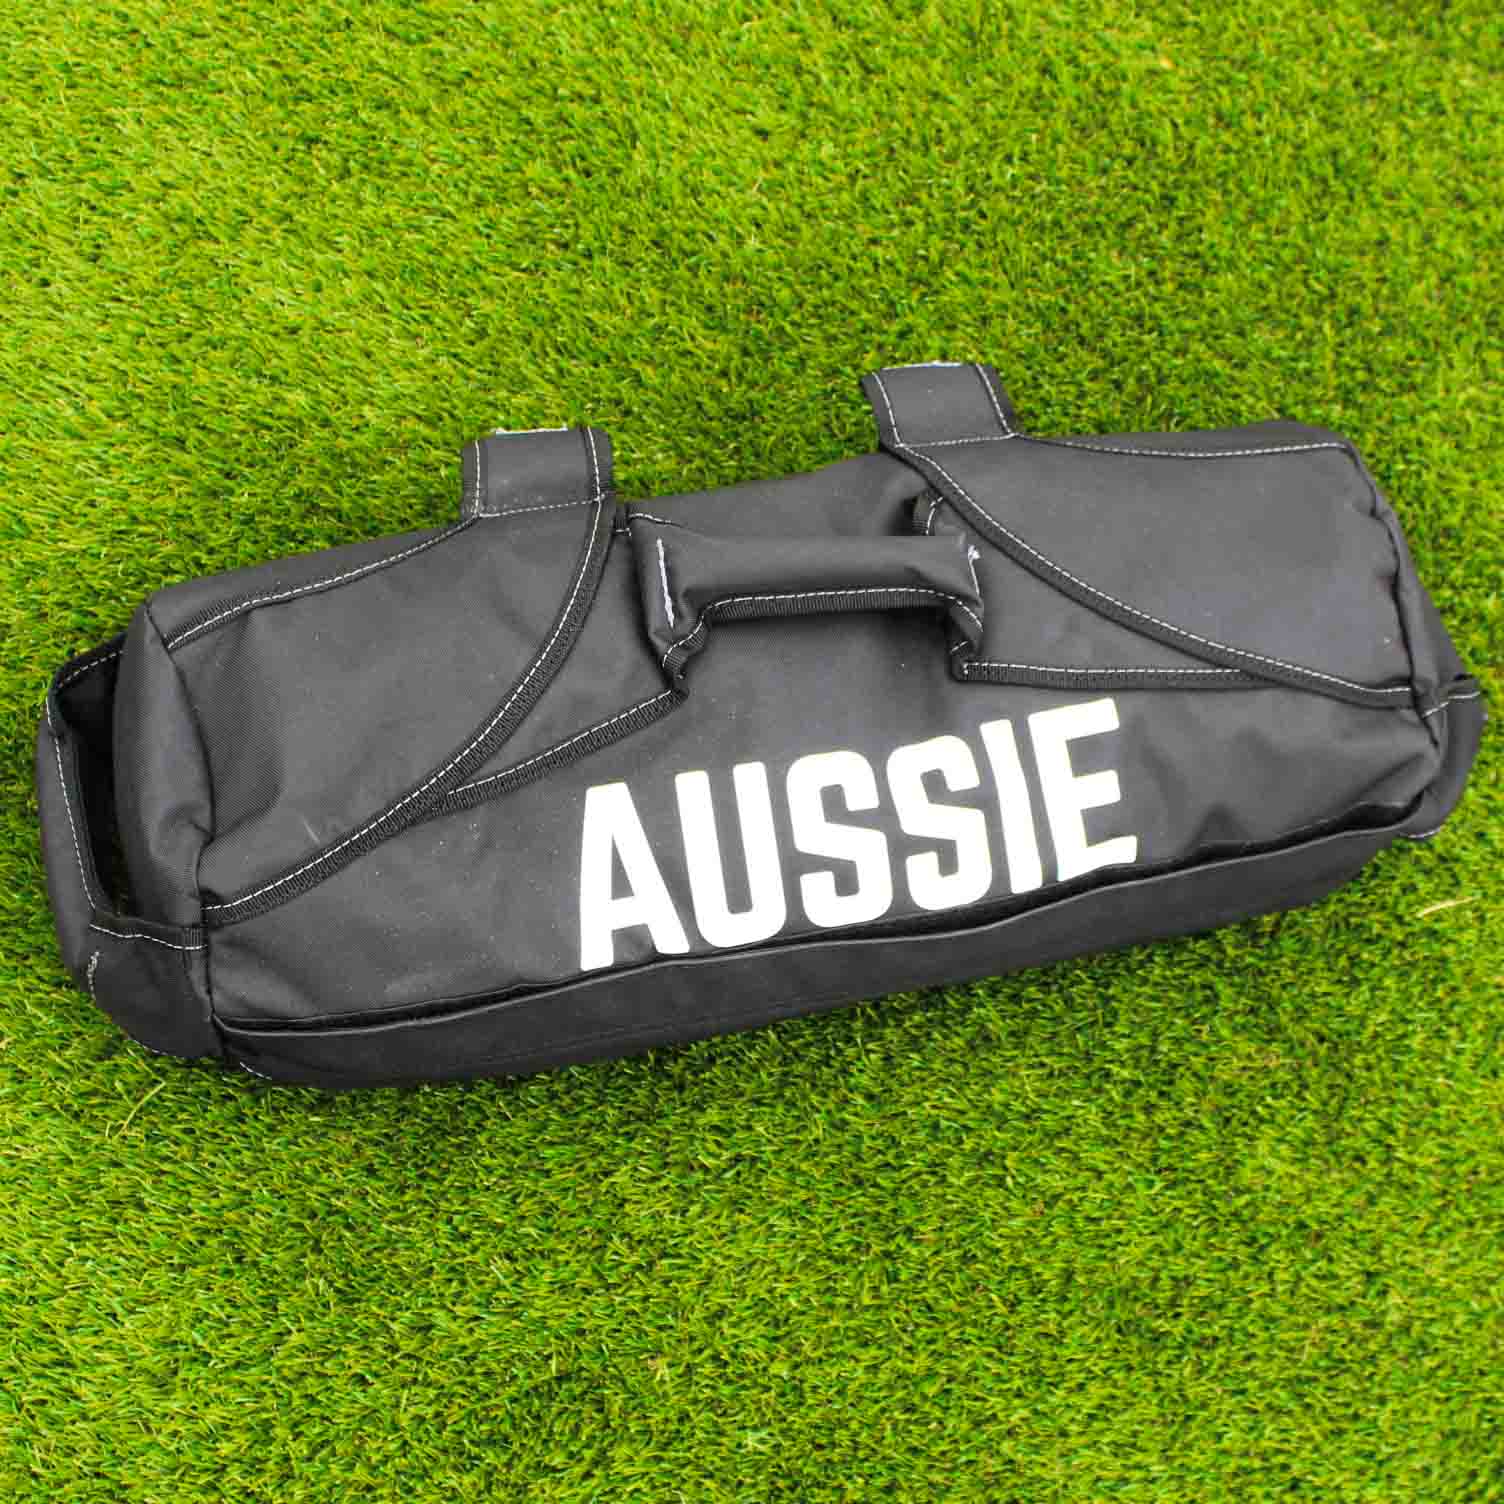 Aussie Pro Sandbag - Aussie Fitness Pros